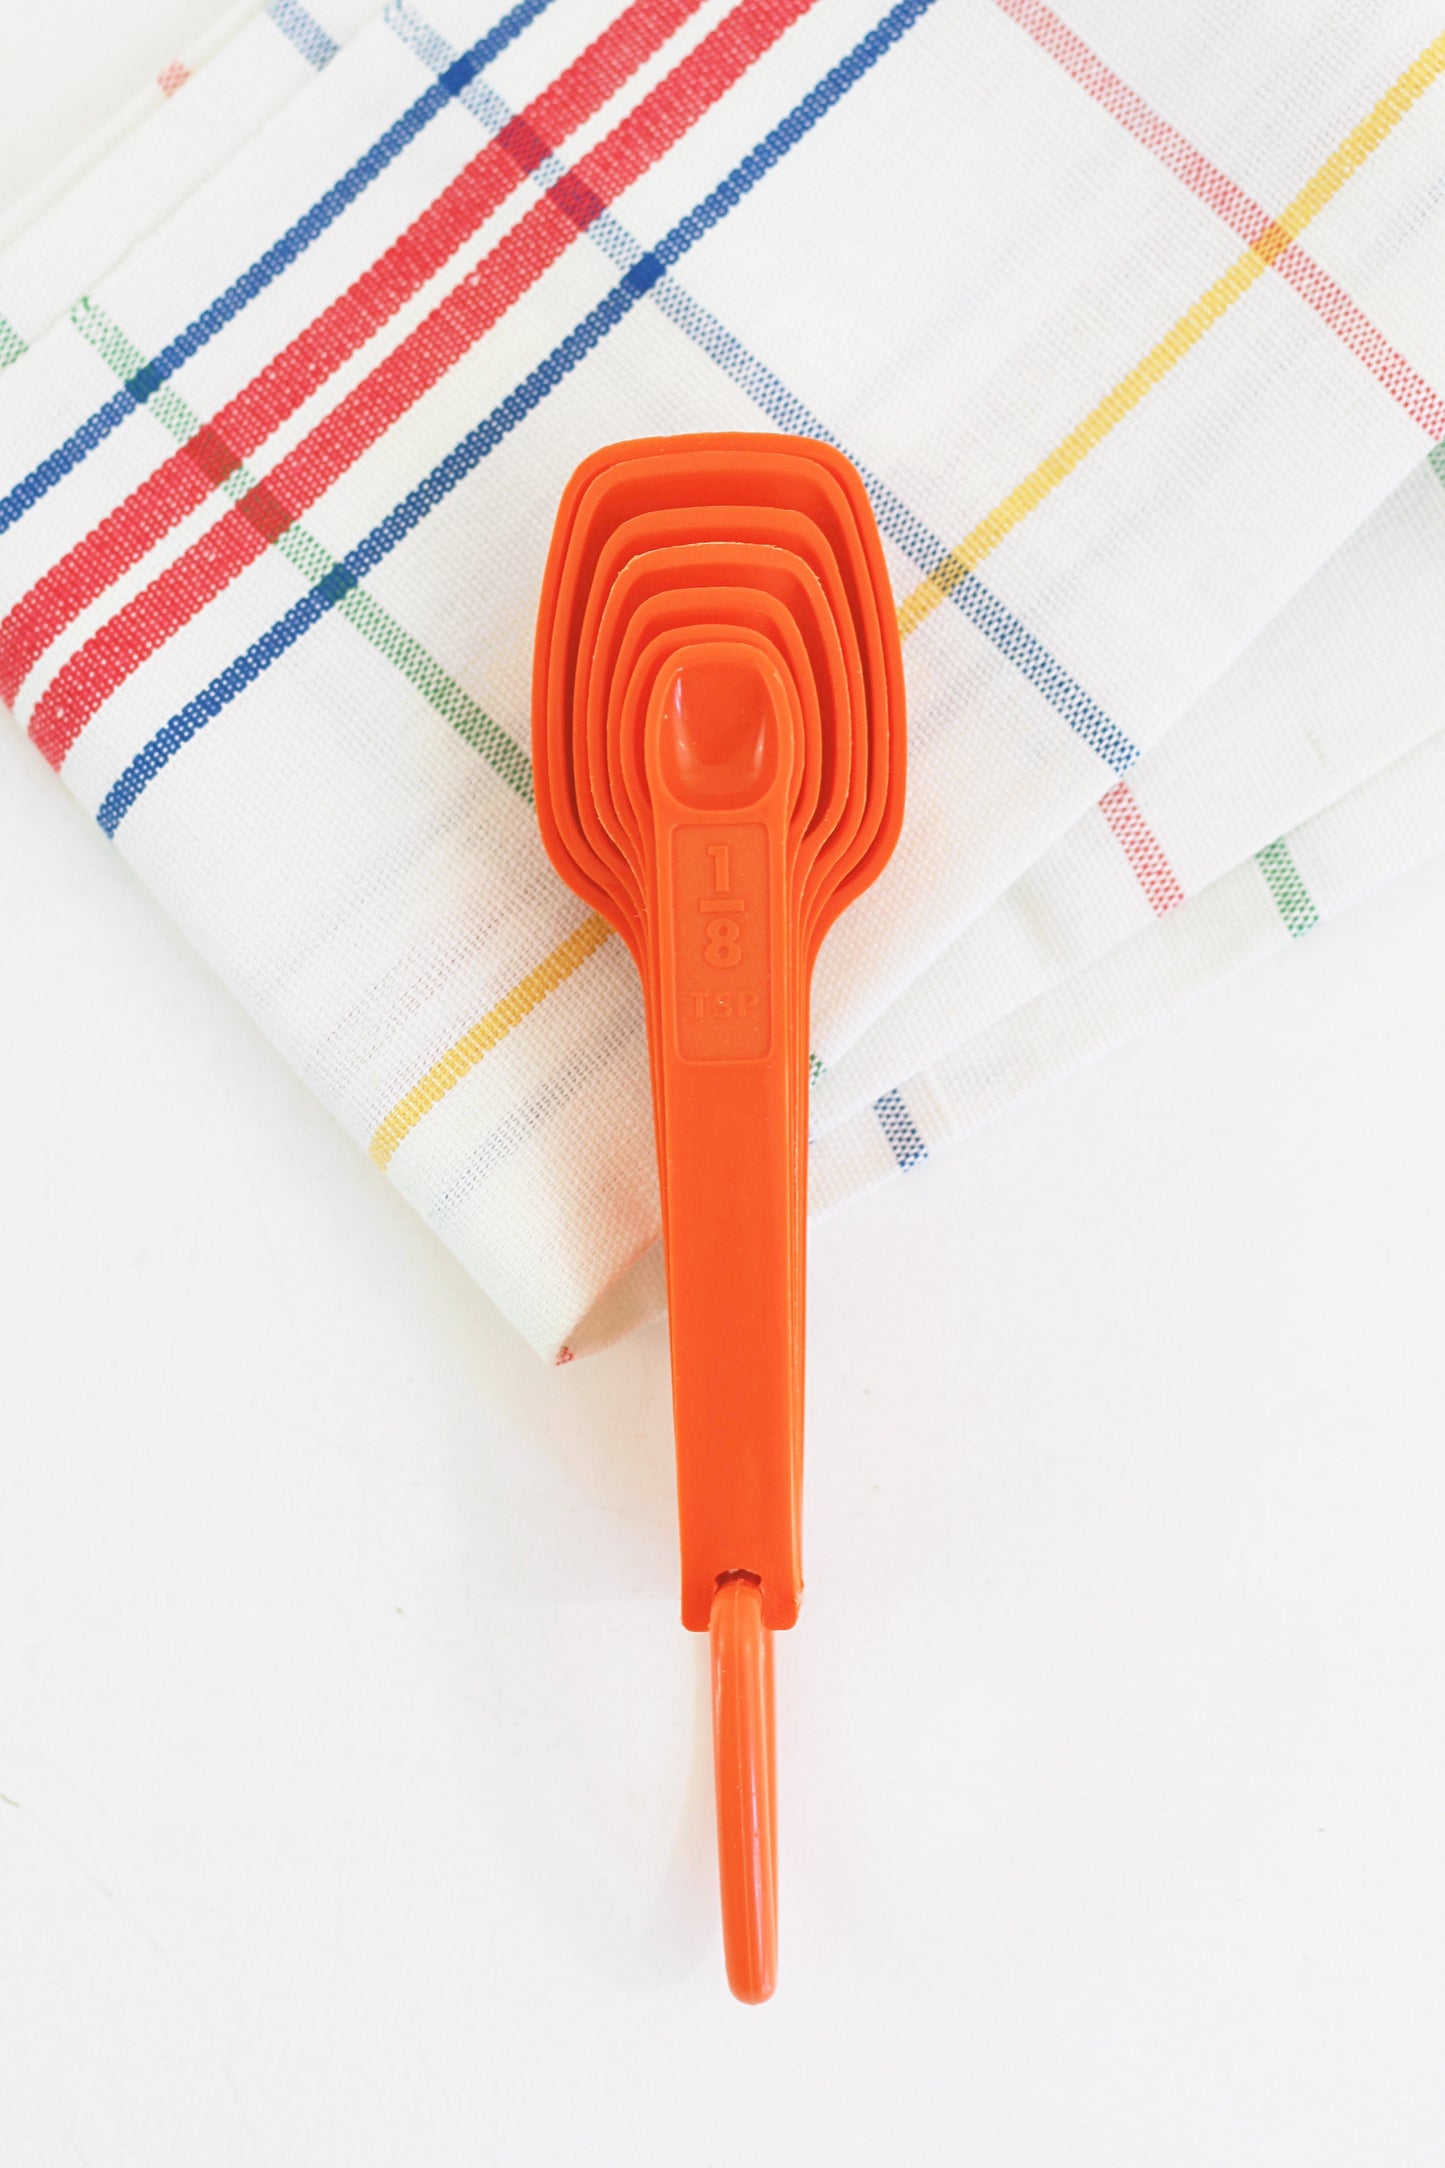 SOLD - Vintage Orange Tupperware Measuring Spoons